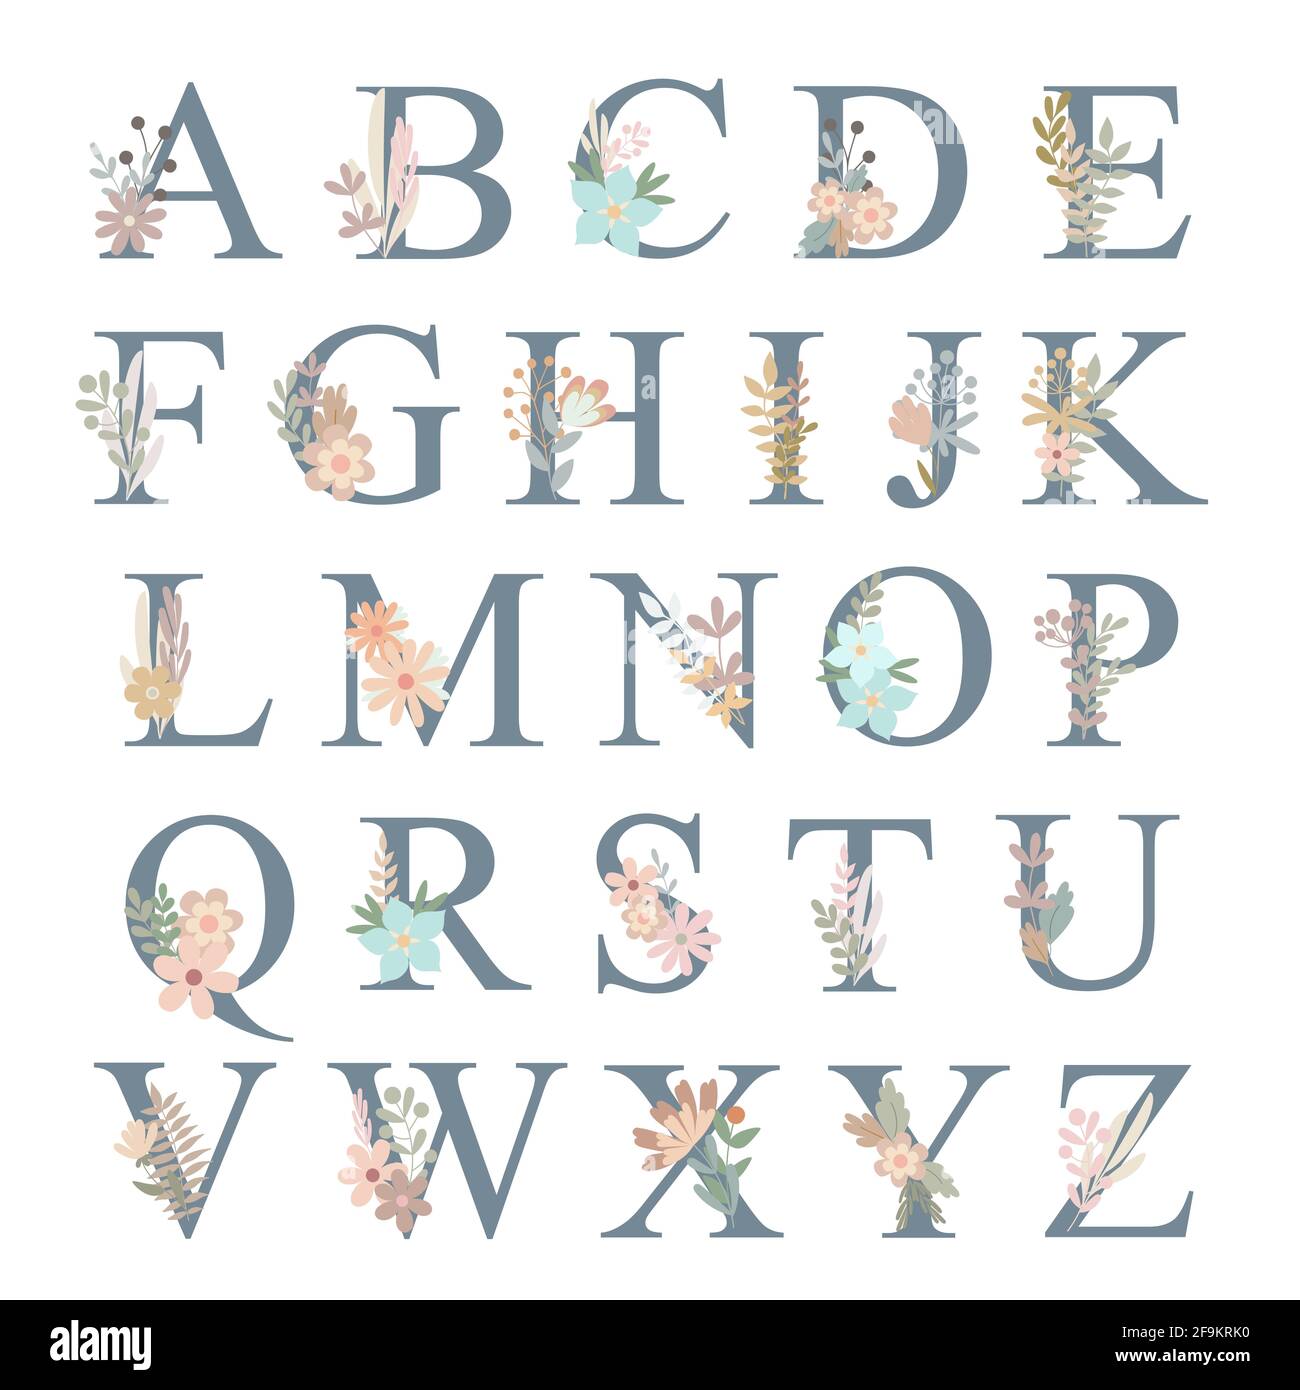 Letras decorativas  Letras de monograma, Tipos de letras abecedario,  Modelos de letras